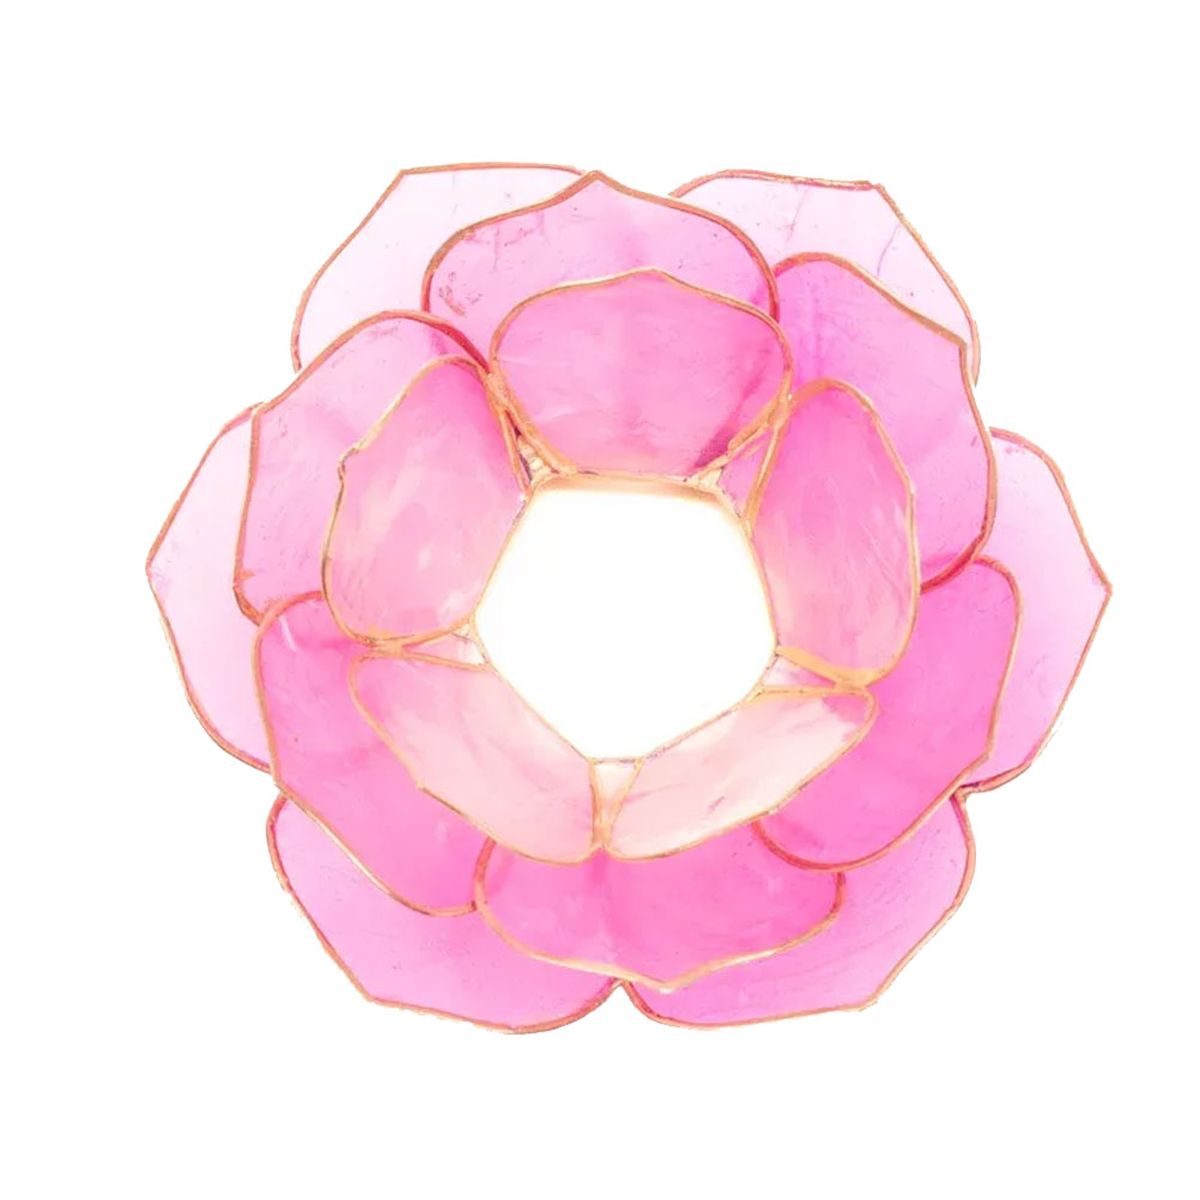 Lotus petal atmospheric light Pink gold trim